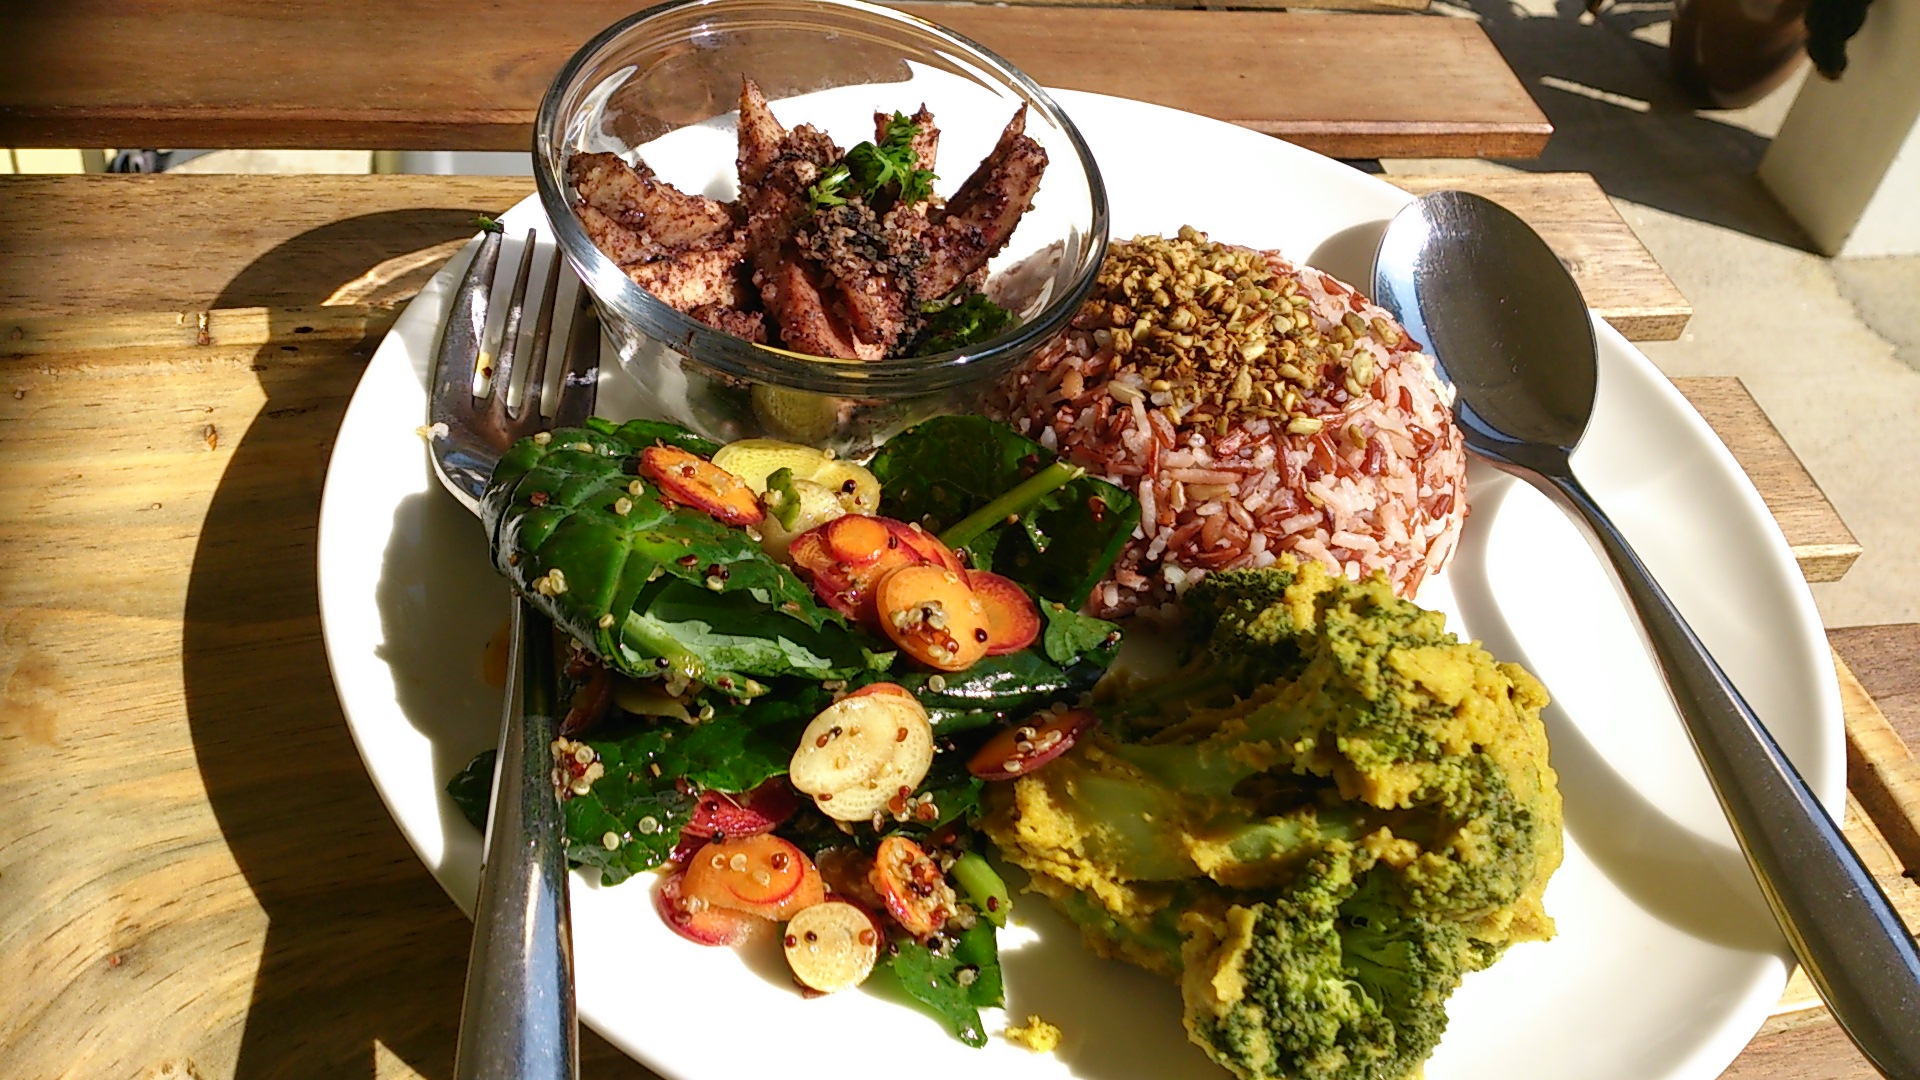 健康、美味及低碳，是绿汇学苑的低碳餐厅 「慧食堂」的食品特色。